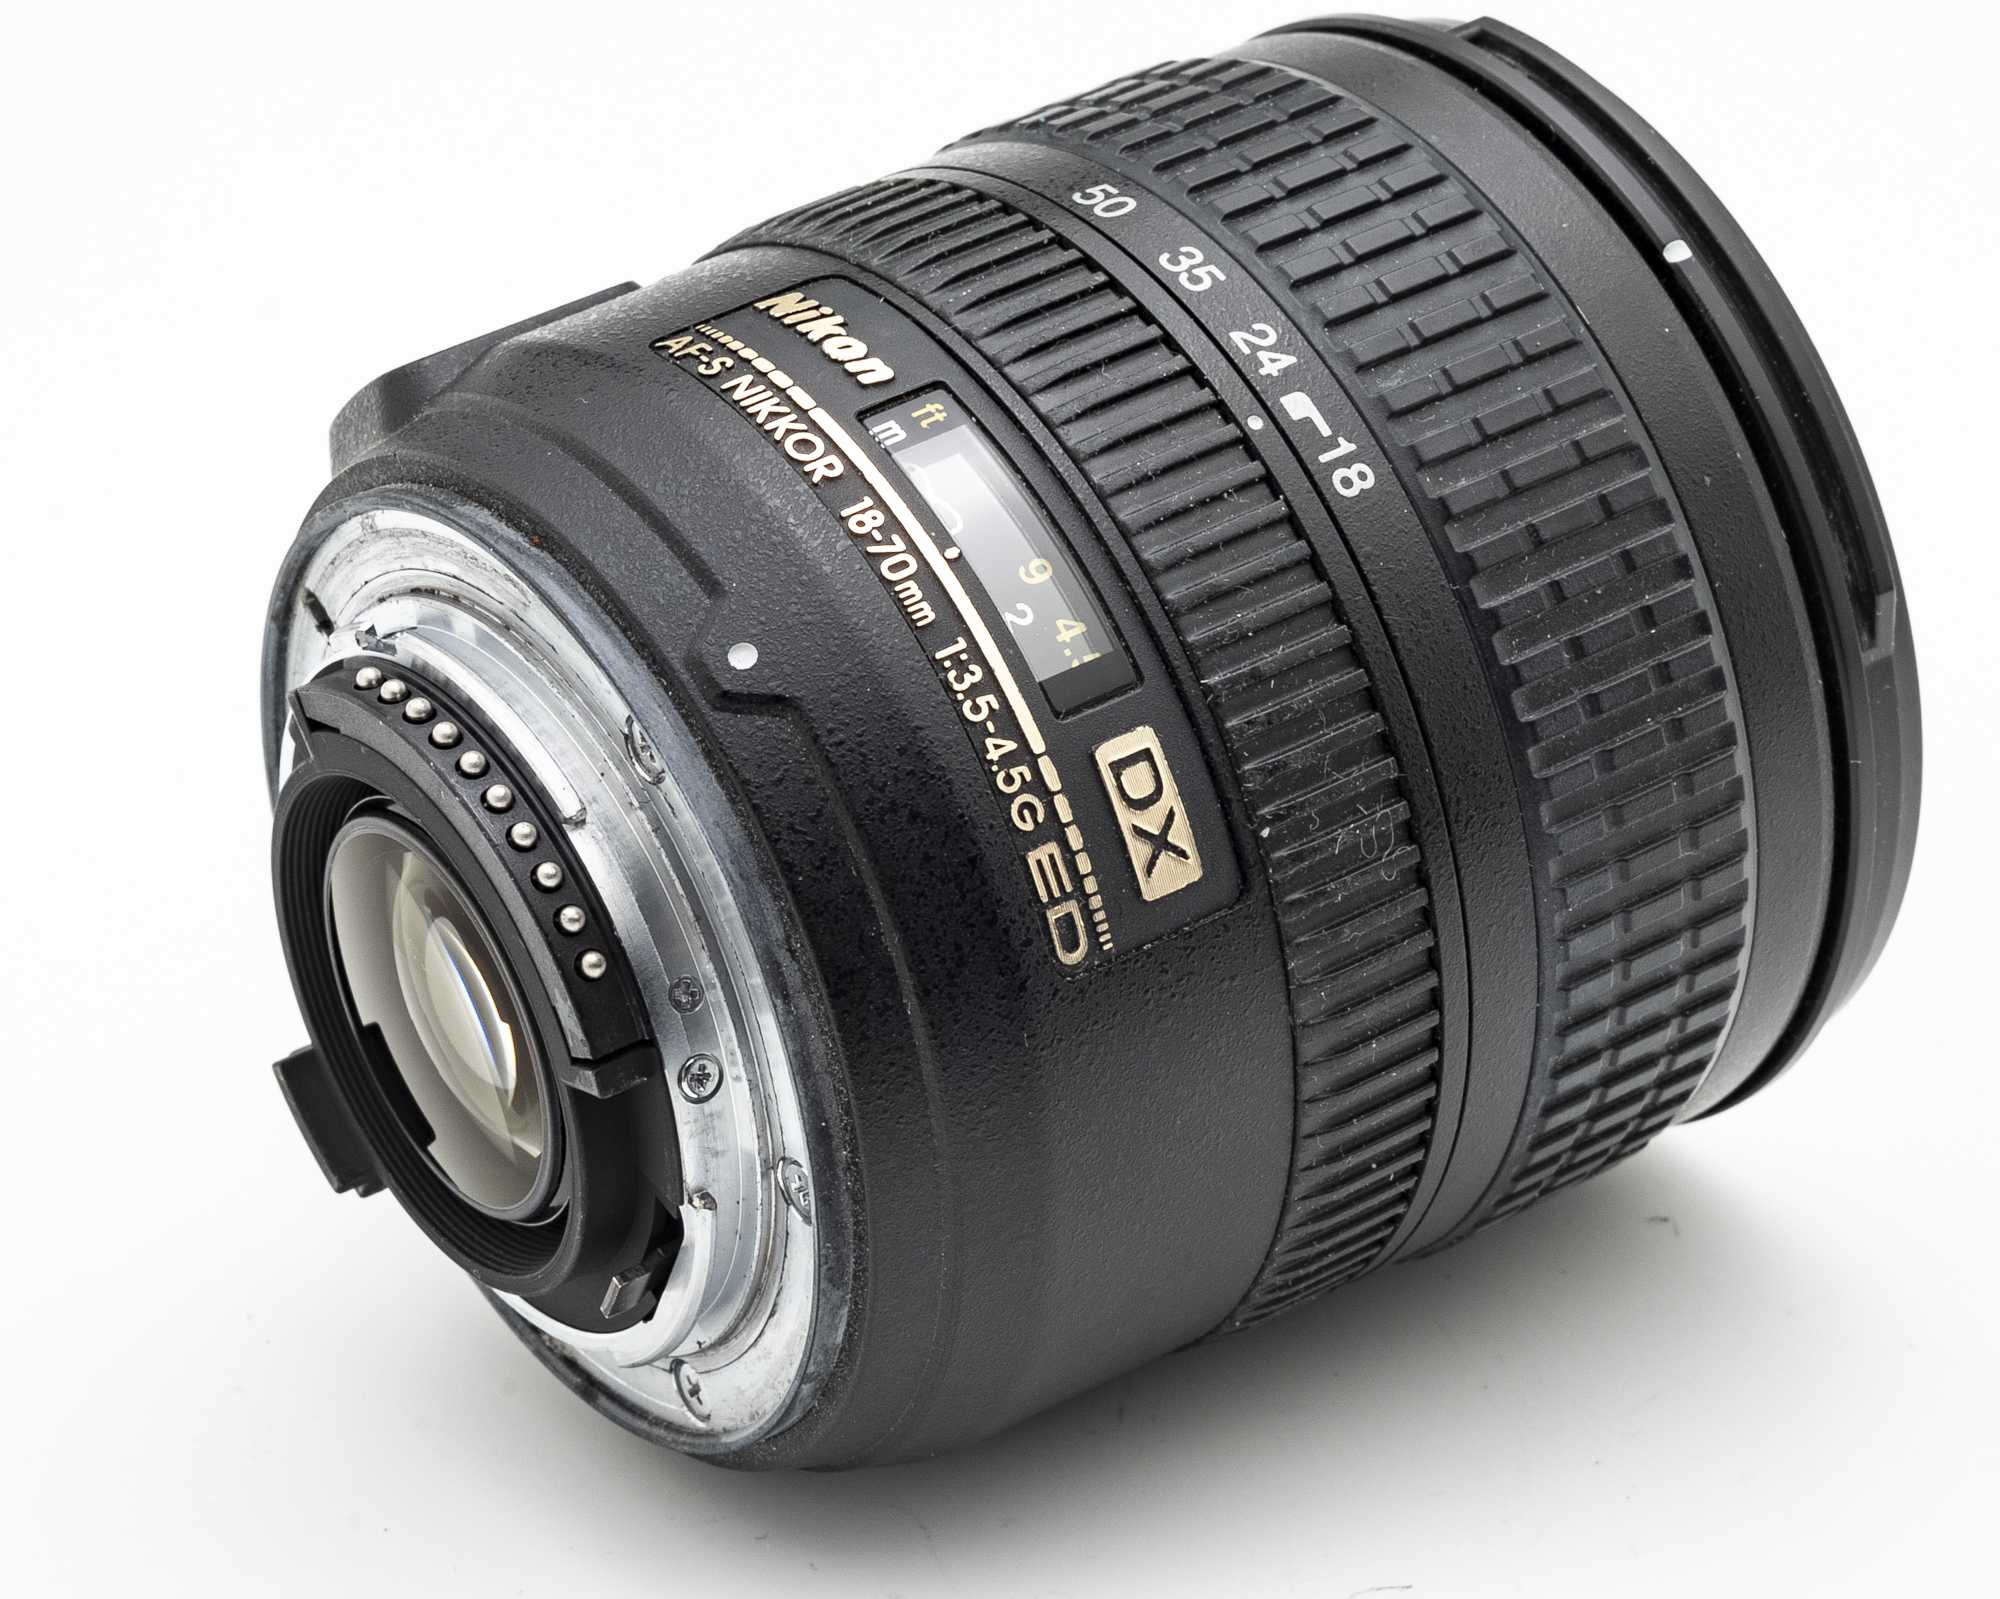 Nikon DX AF-S Nikkor 18-70mm 18-70 mm 3.5-4.5g ed SWM if aspherical | eBay